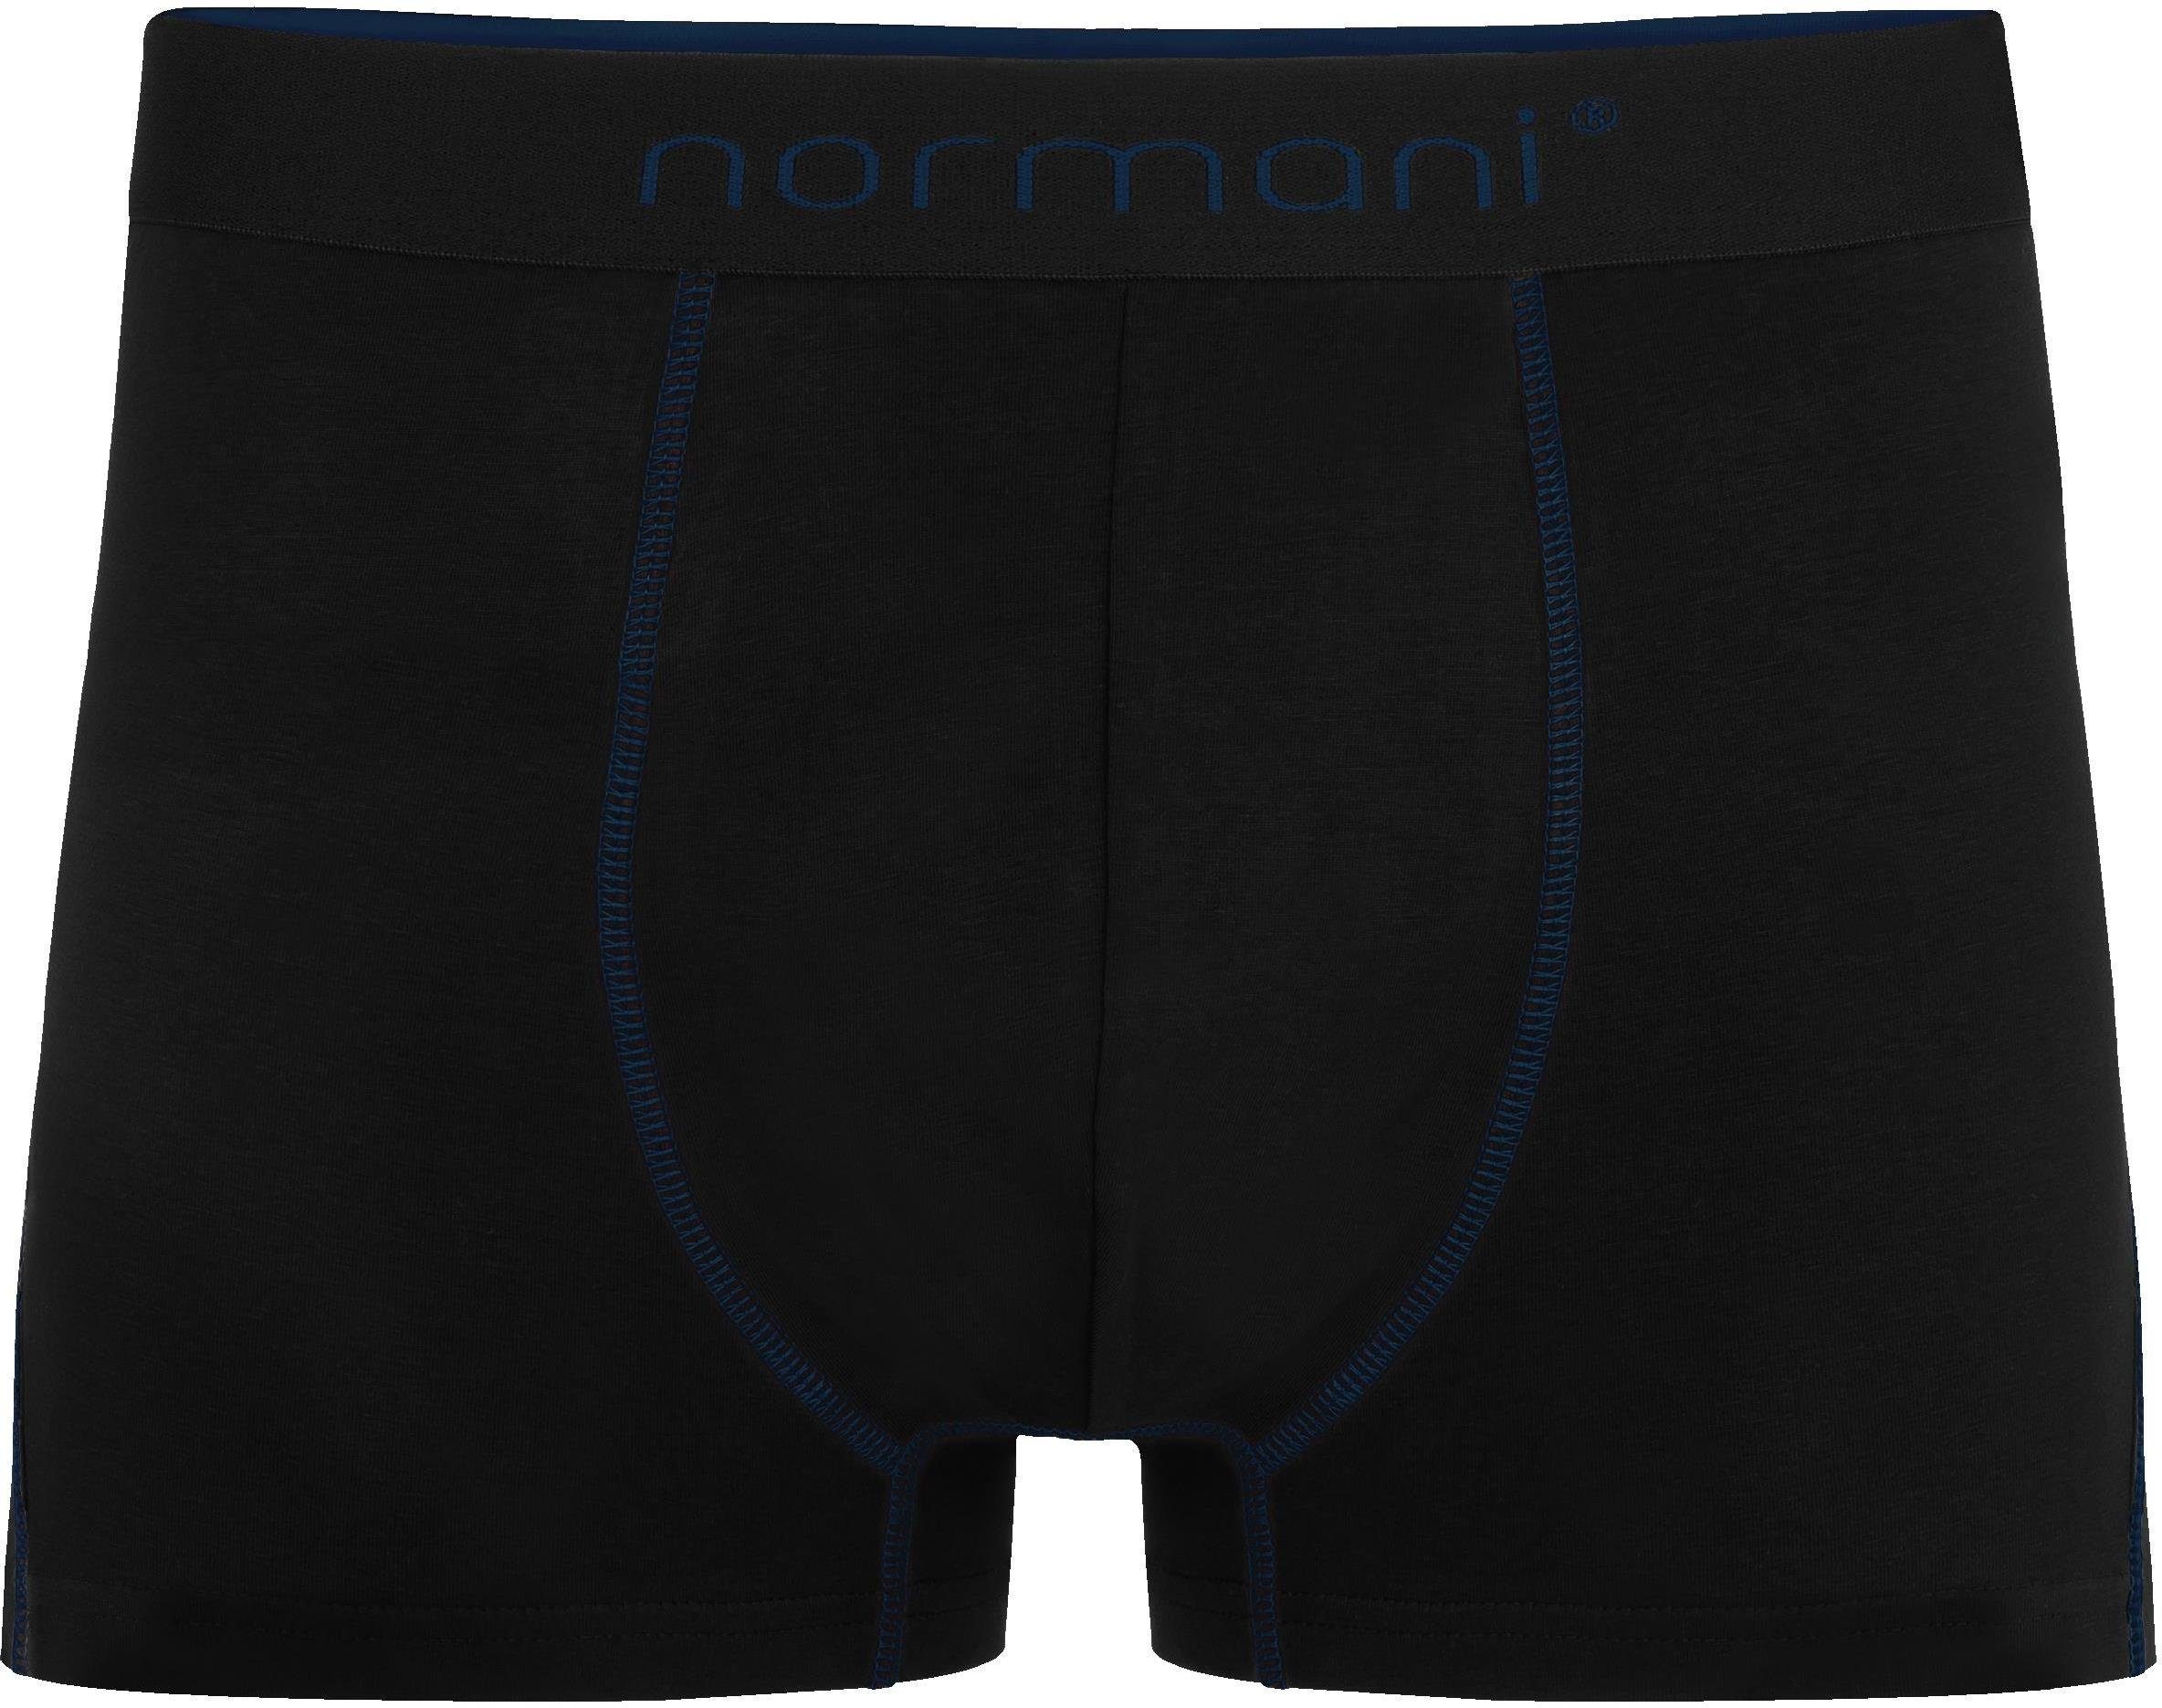 12 Männer Boxershorts normani Grau/Dunkelblau/Schwarz Herren Baumwolle Unterhose atmungsaktiver Baumwoll-Boxershorts aus x für